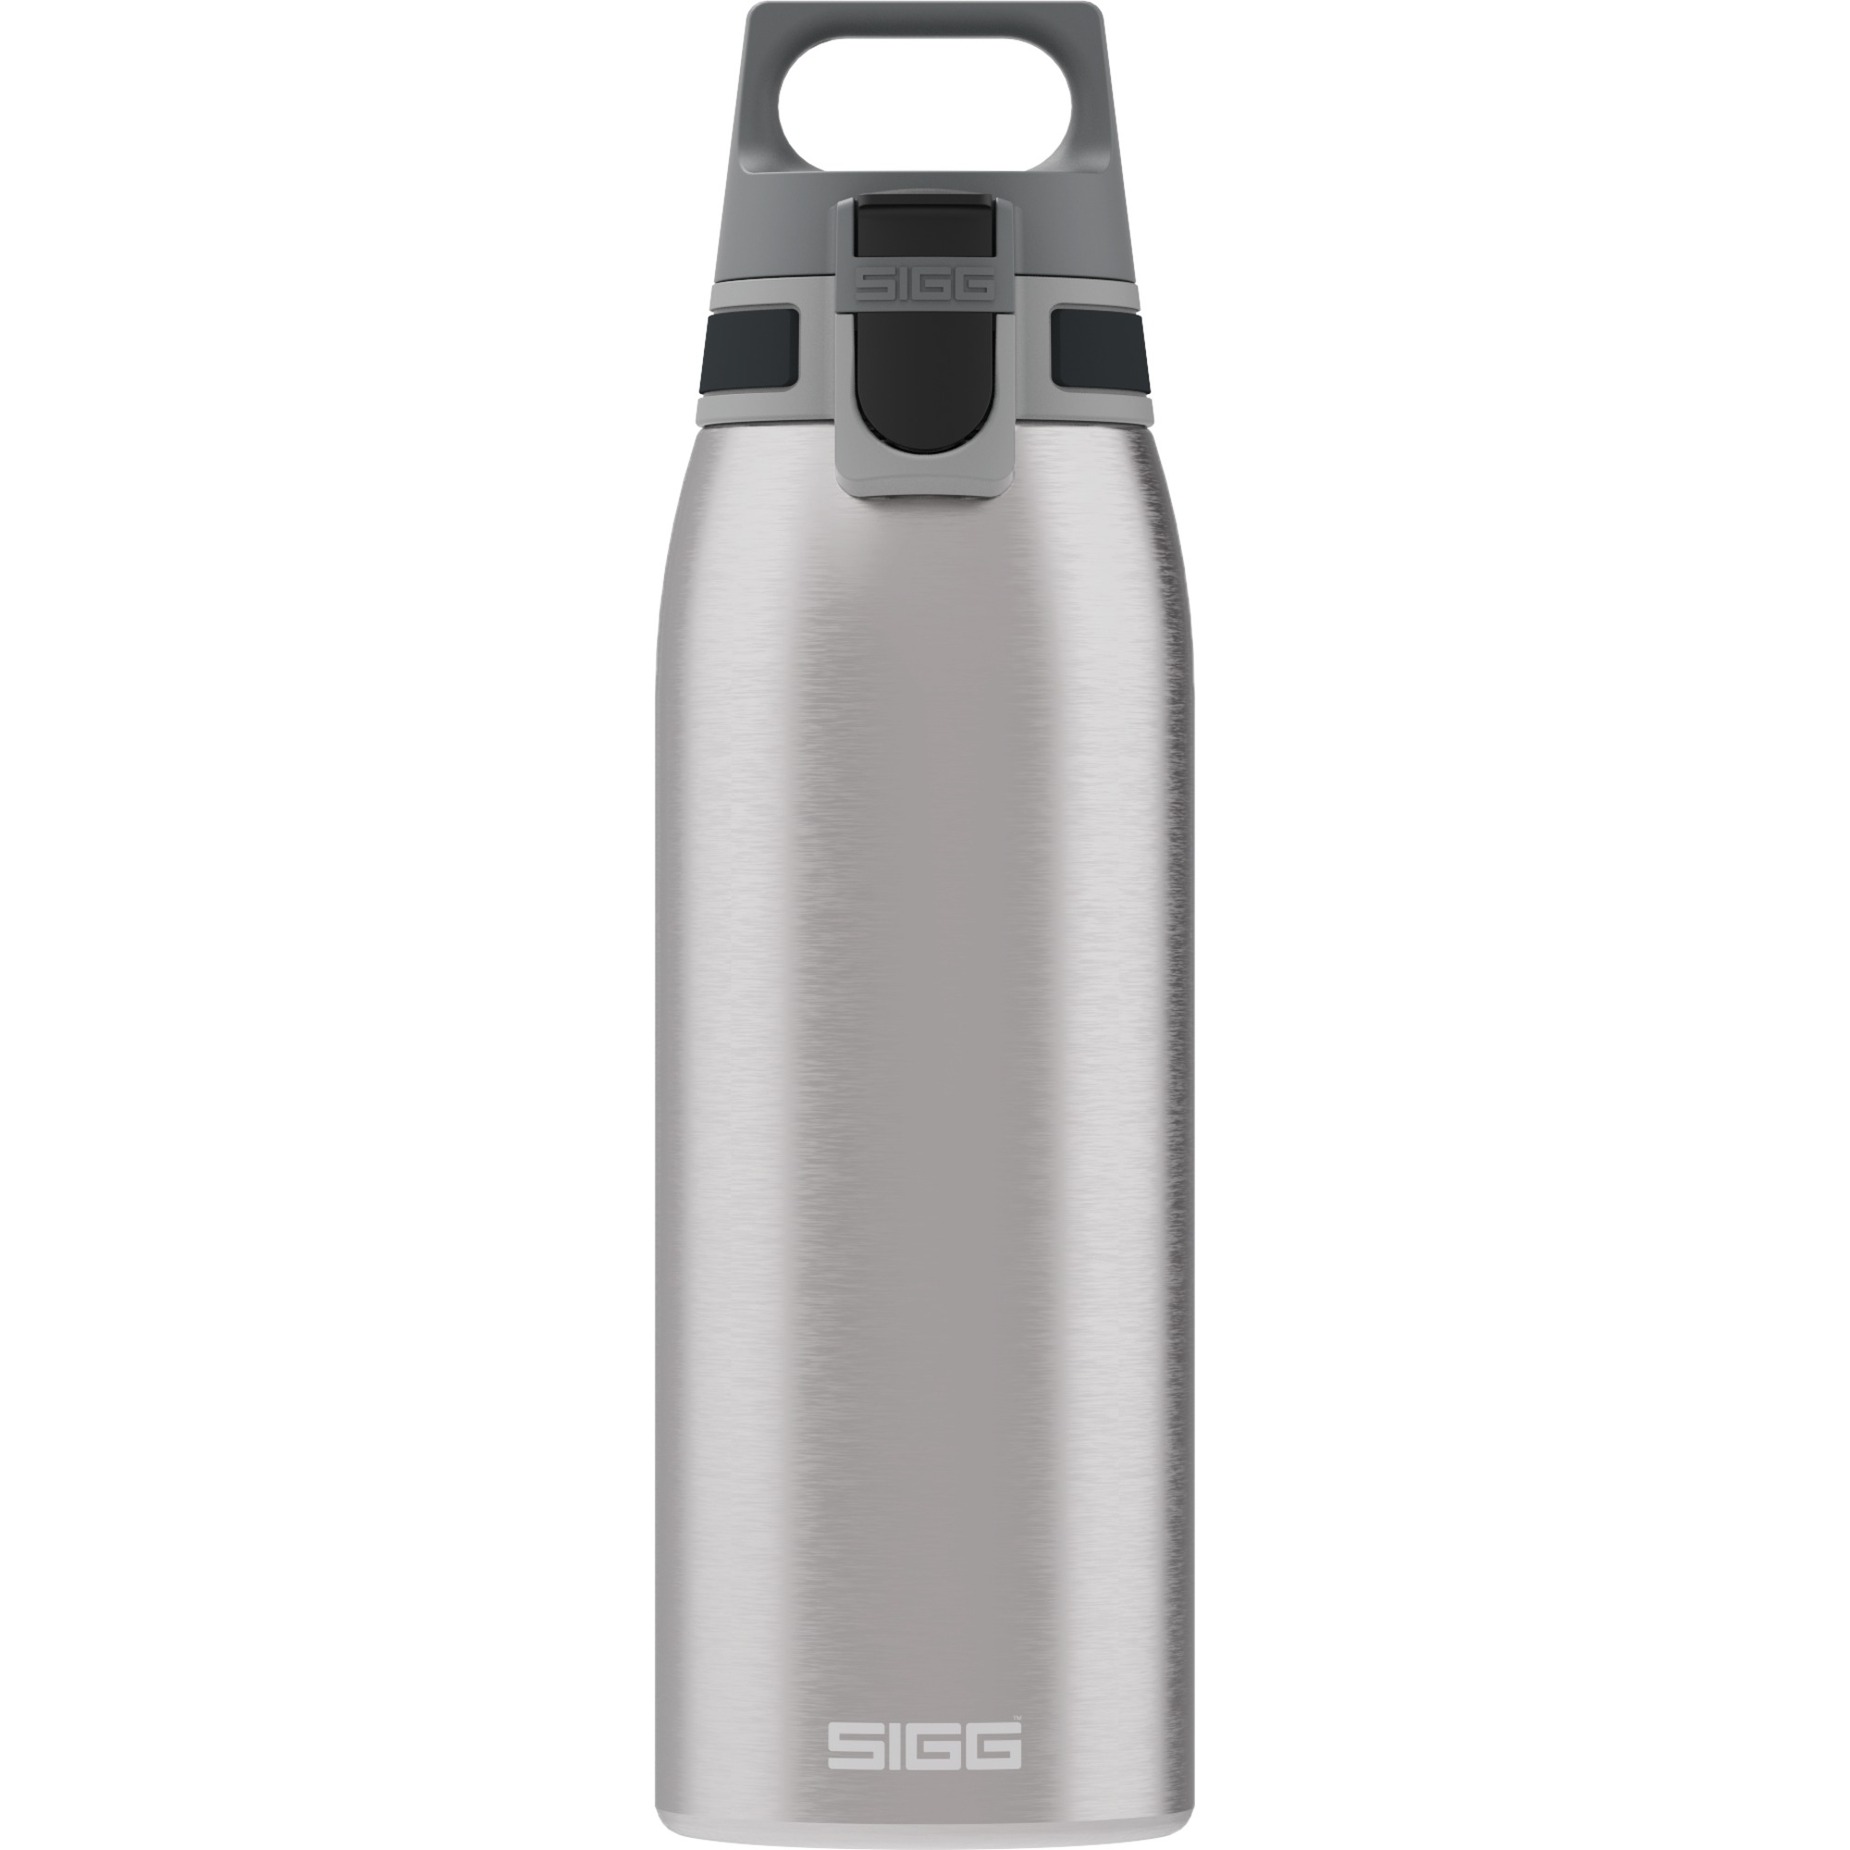 Image of Alternate - Trinkflasche Shield One Brushed 1L online einkaufen bei Alternate